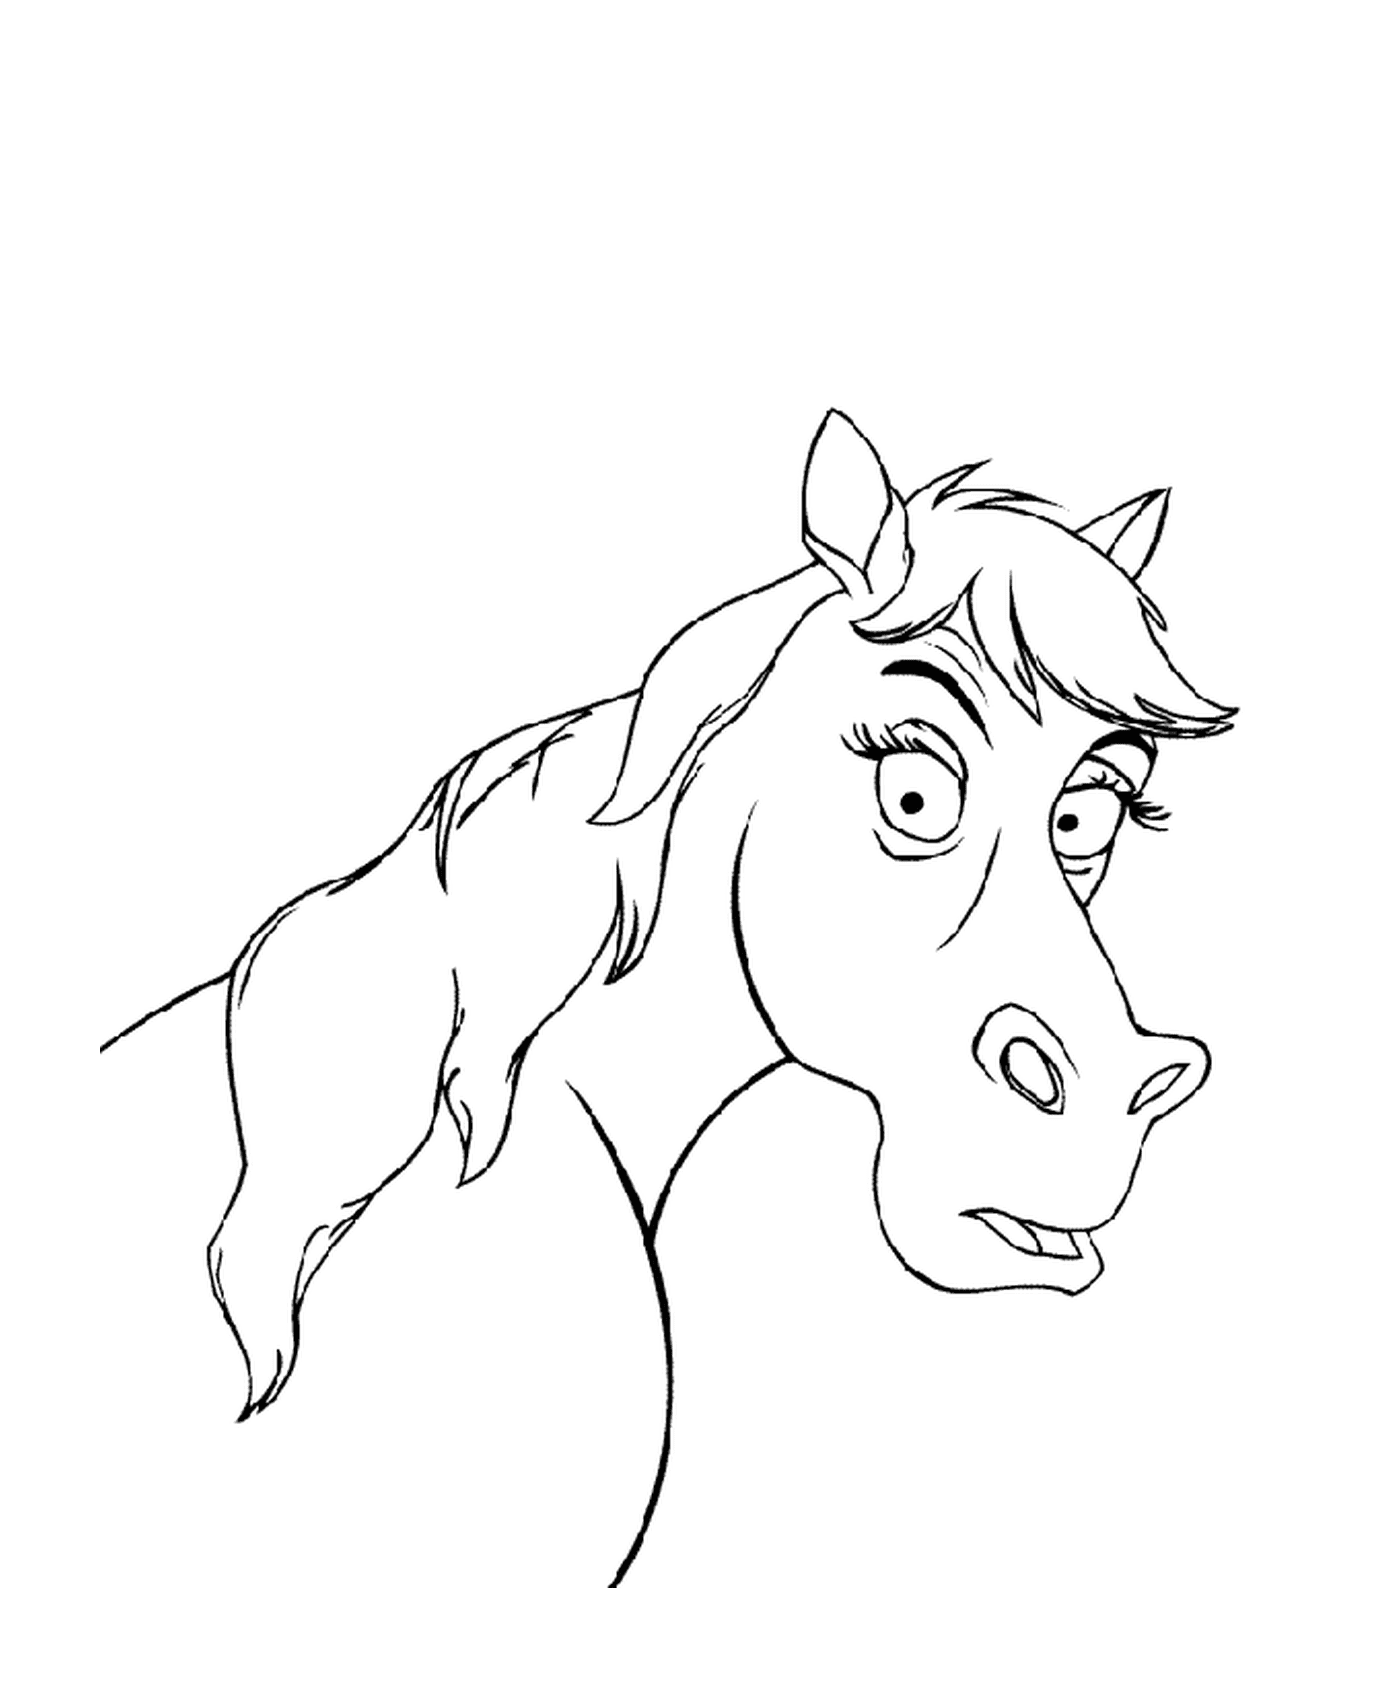 coloriage dessin animaux tete de cheval